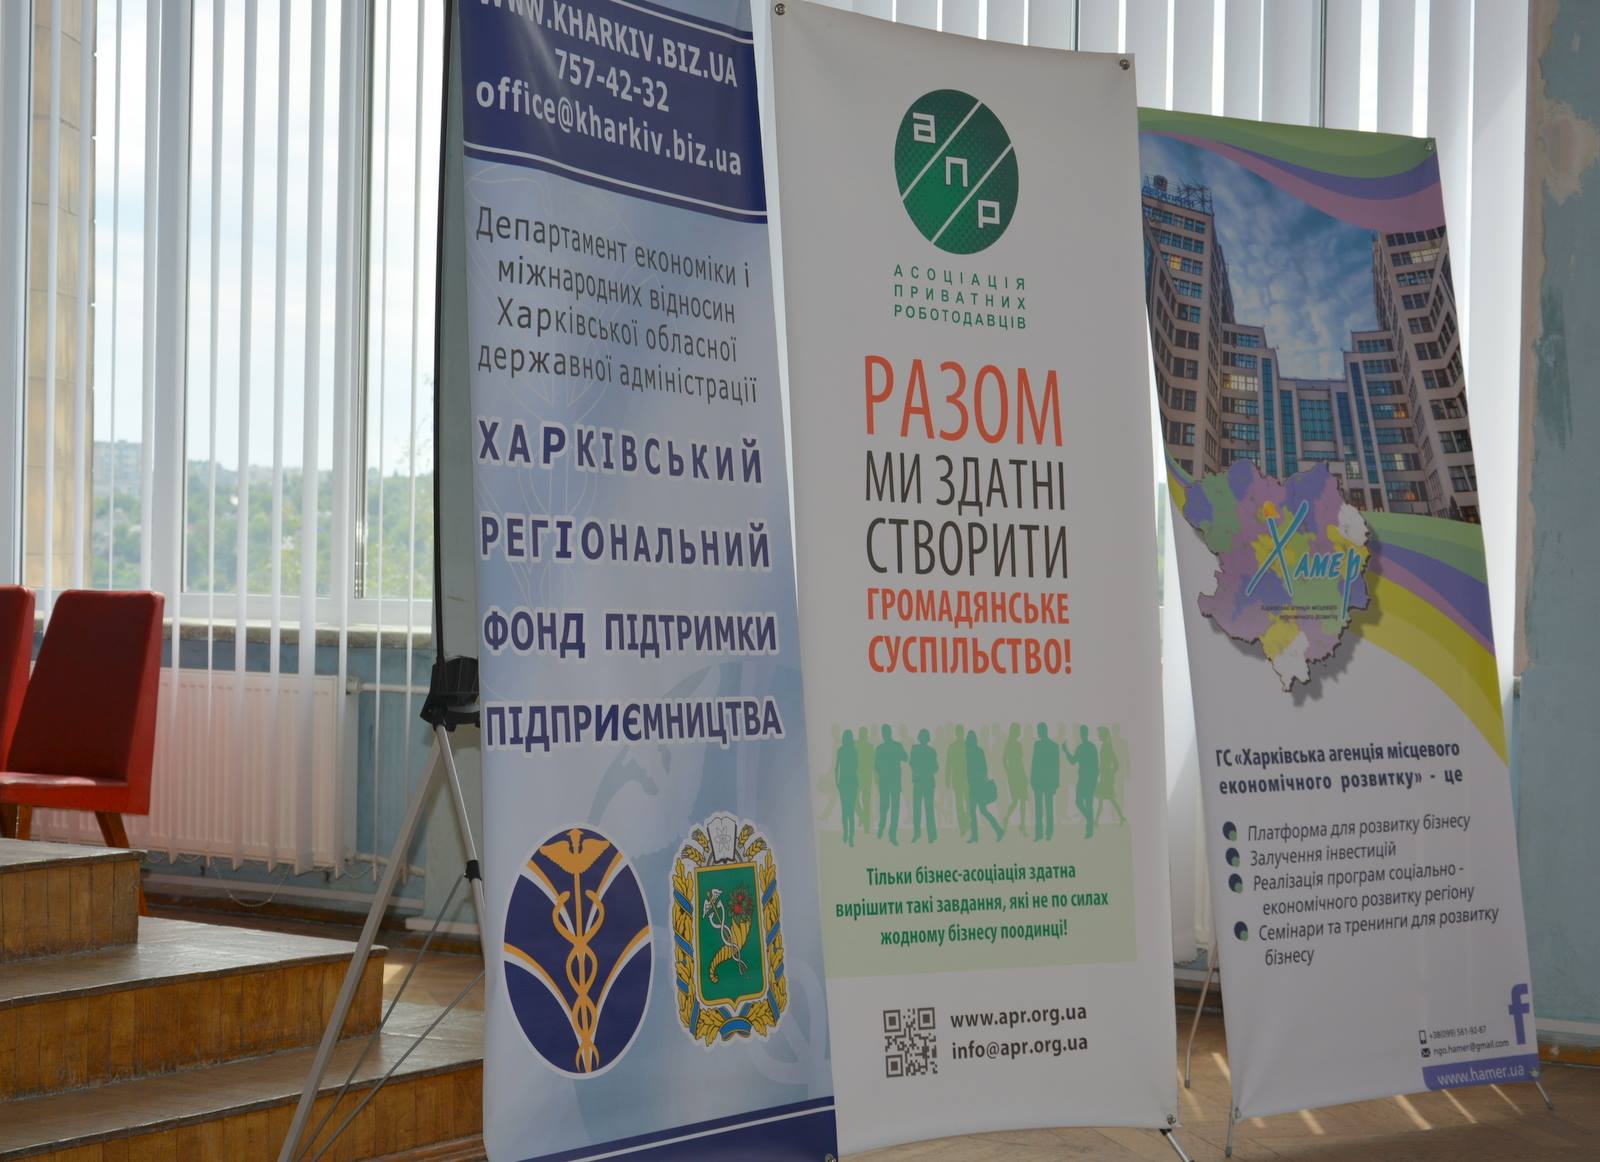 Выездные семинары для представителей МСБ районов Харьковской области